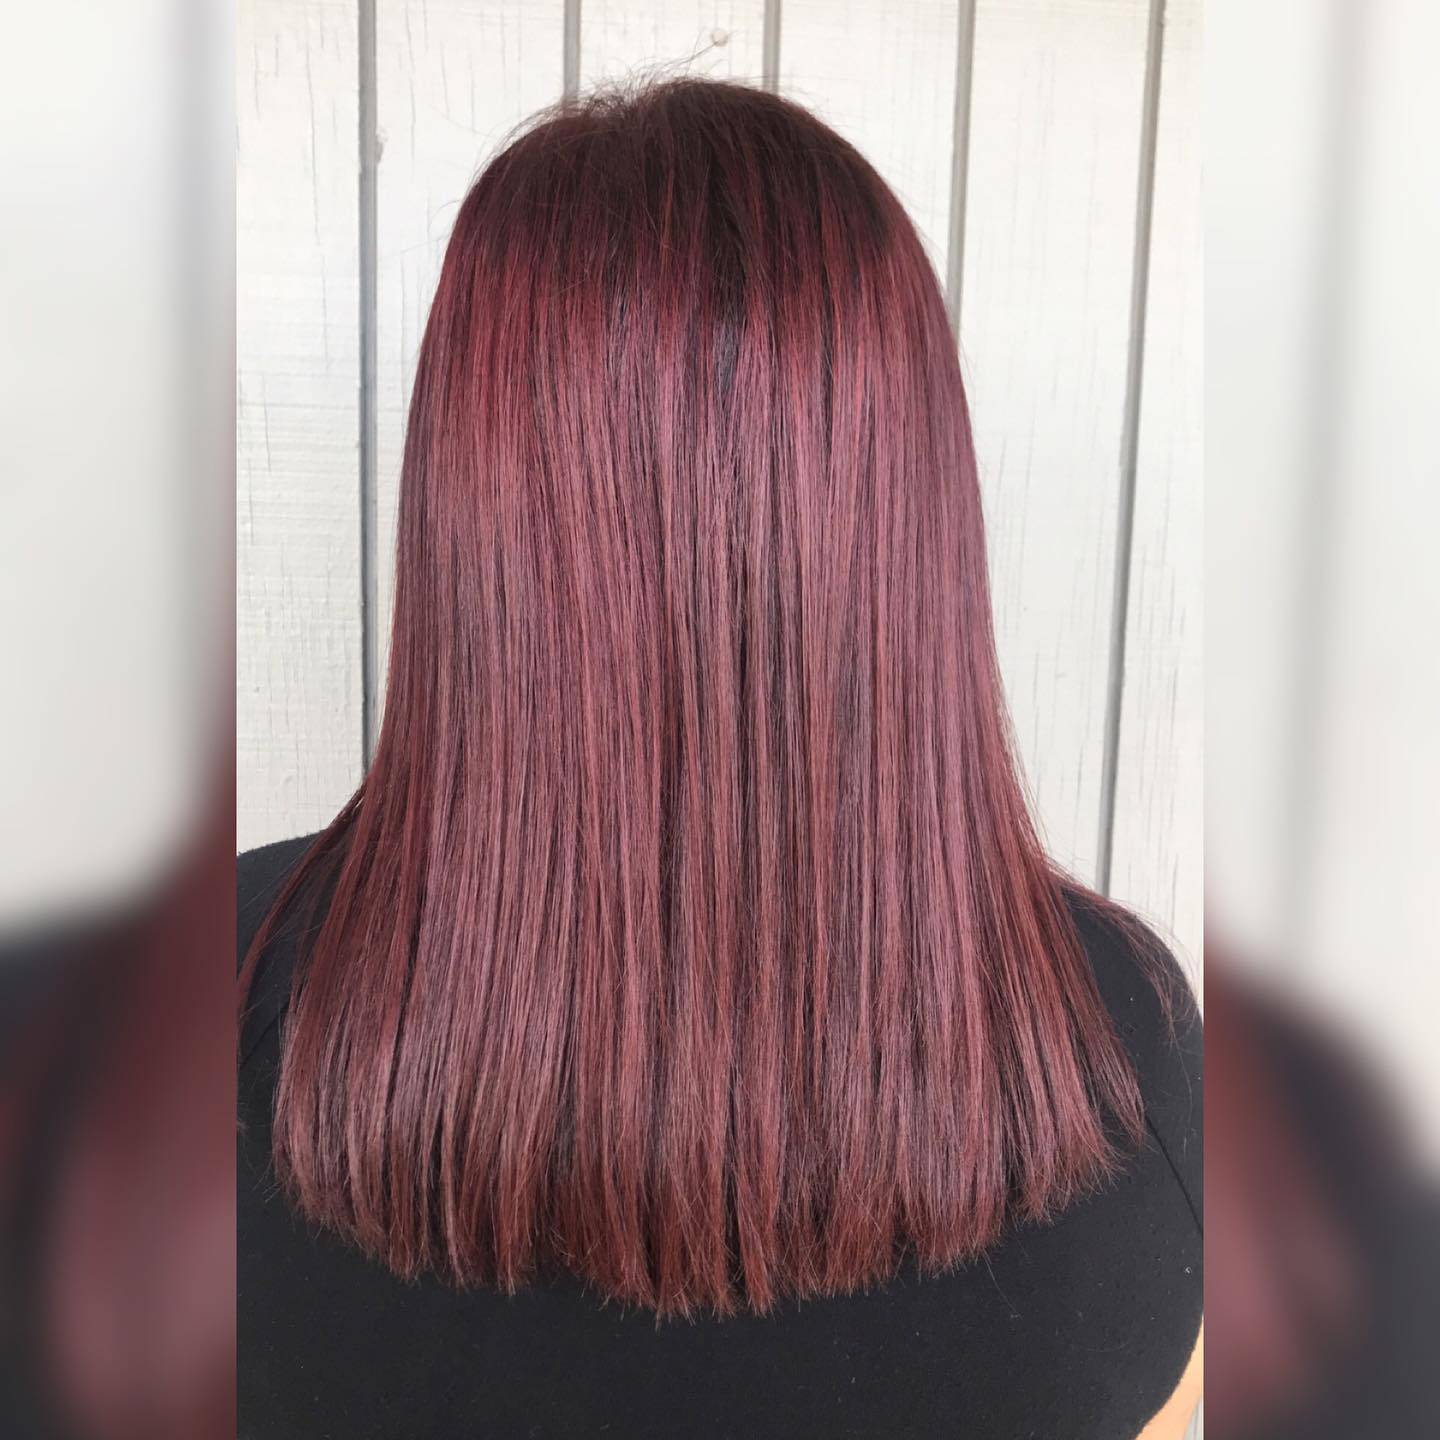 Burgundy hair color 16 burgundy hair color | burgundy hair color for women | burgundy hair color highlights Burgundy Hair Color